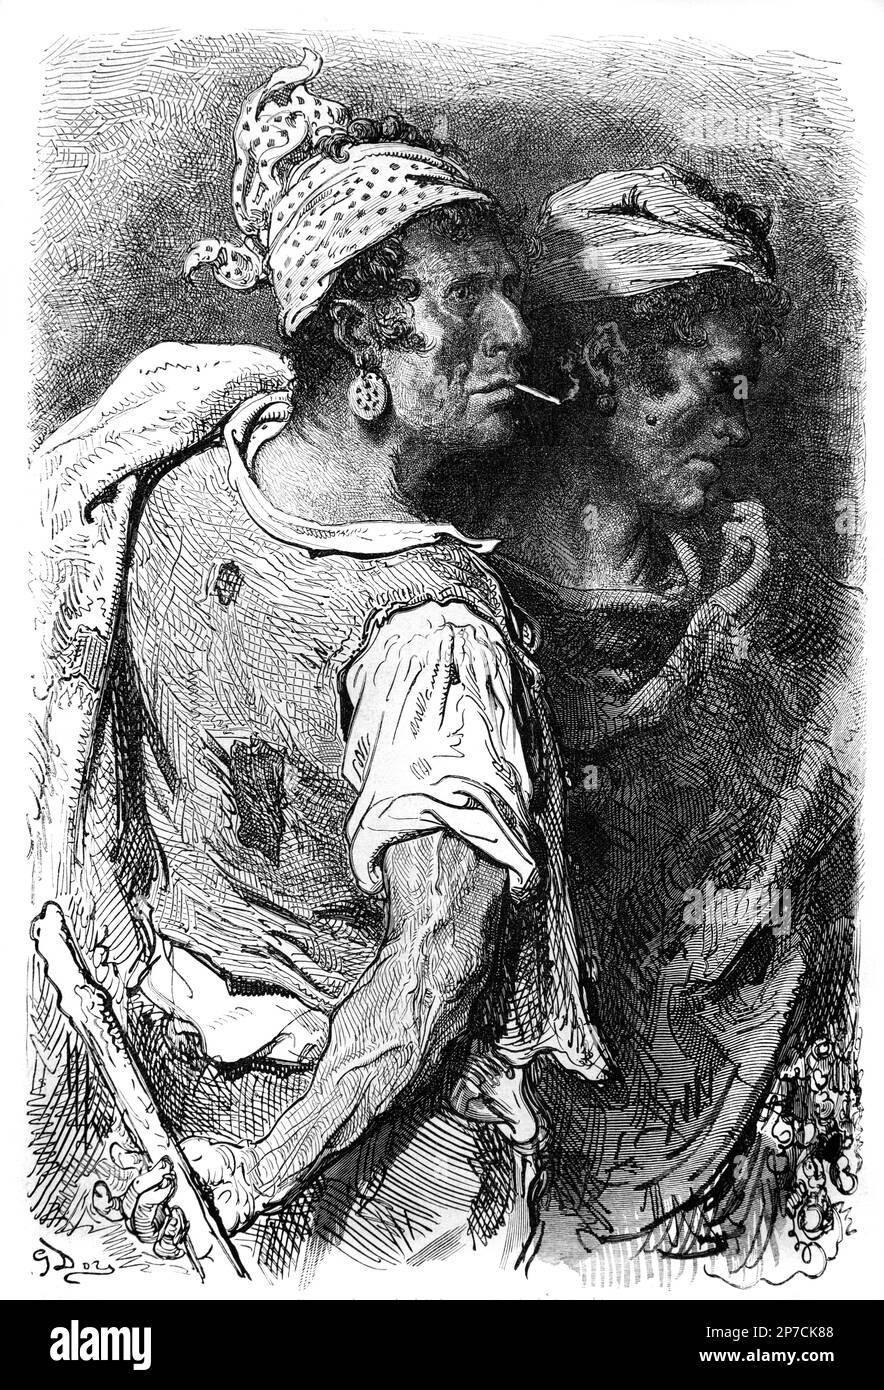 Portrait des hommes de travail ou des tziganes à Valence Espagne gravure ou illustration ancienne ou historique par Gustave doré 1862 Banque D'Images